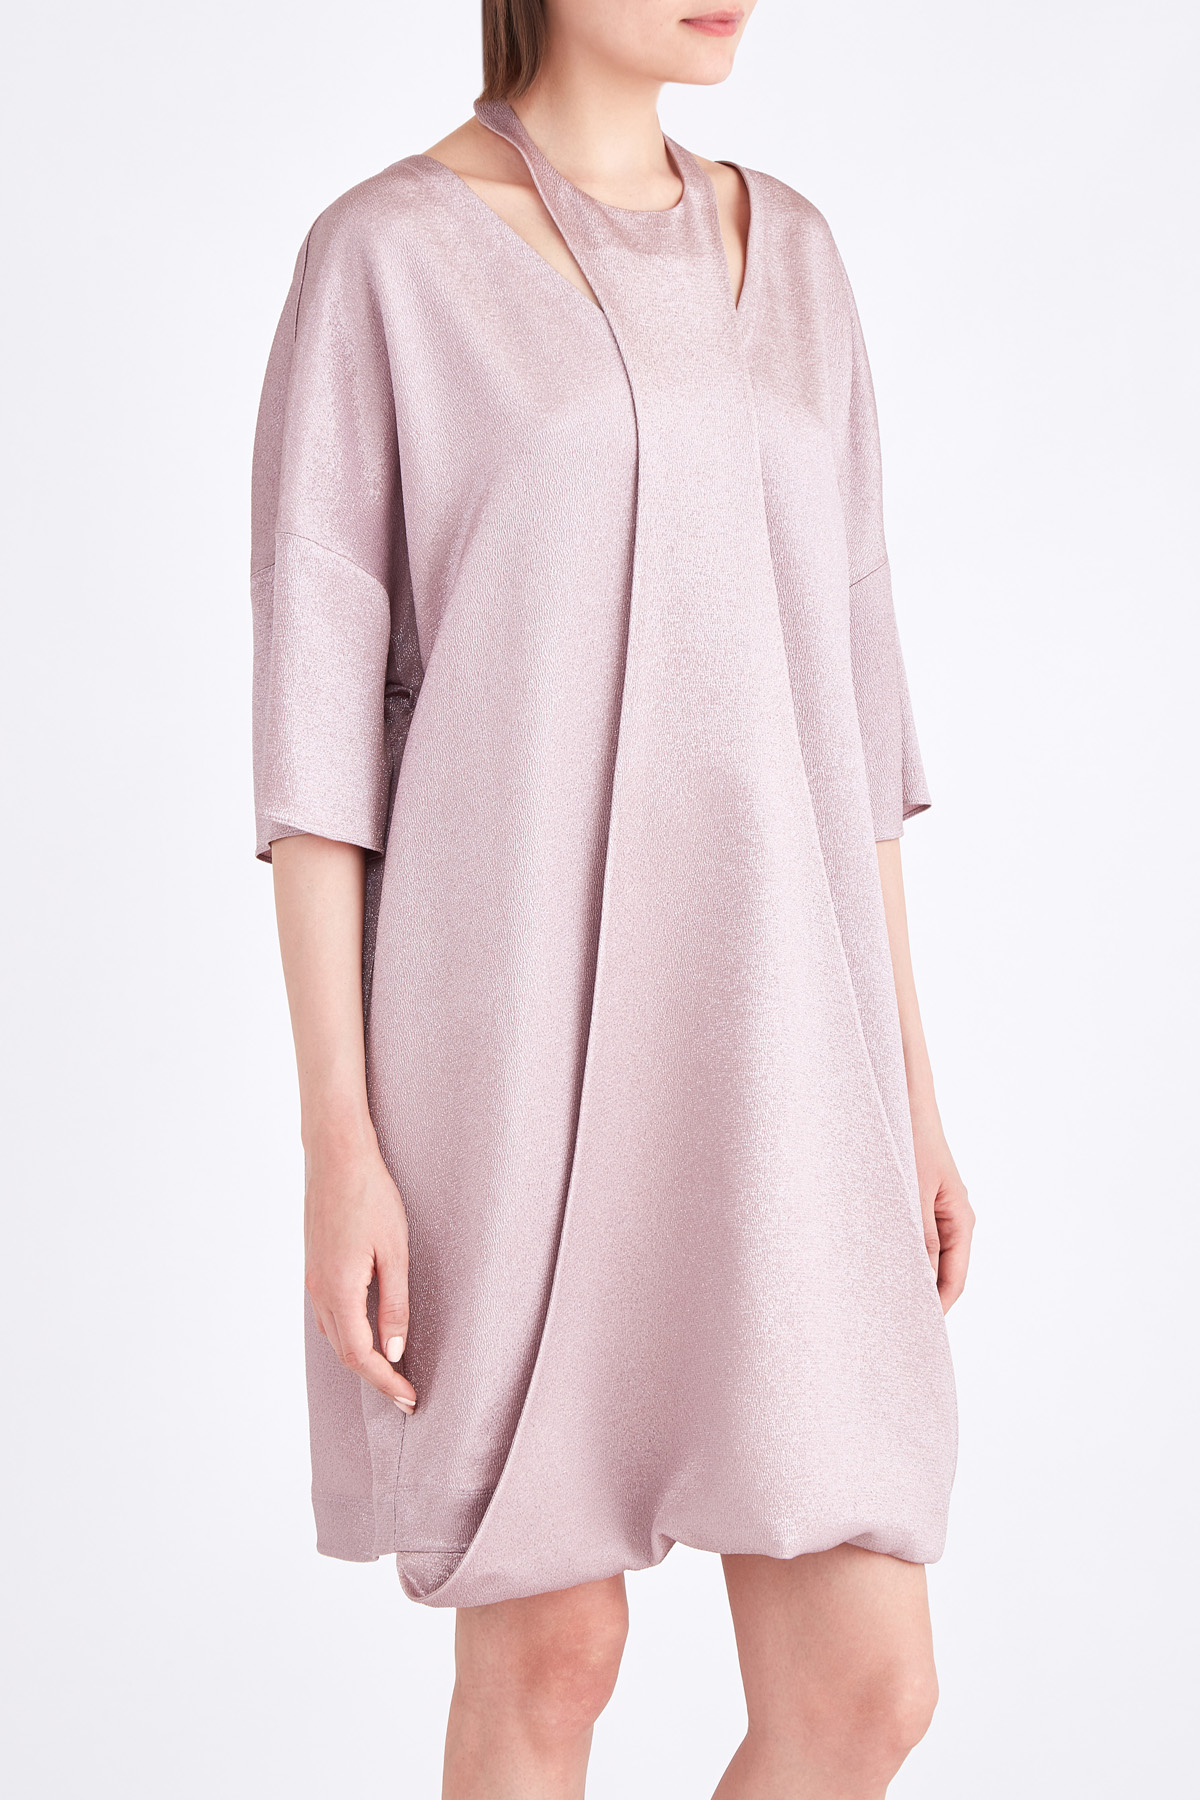 Платье из тисненого металлизрованного атласа с воротником-халтером VALENTINO, цвет розовый, размер 42;44 - фото 3